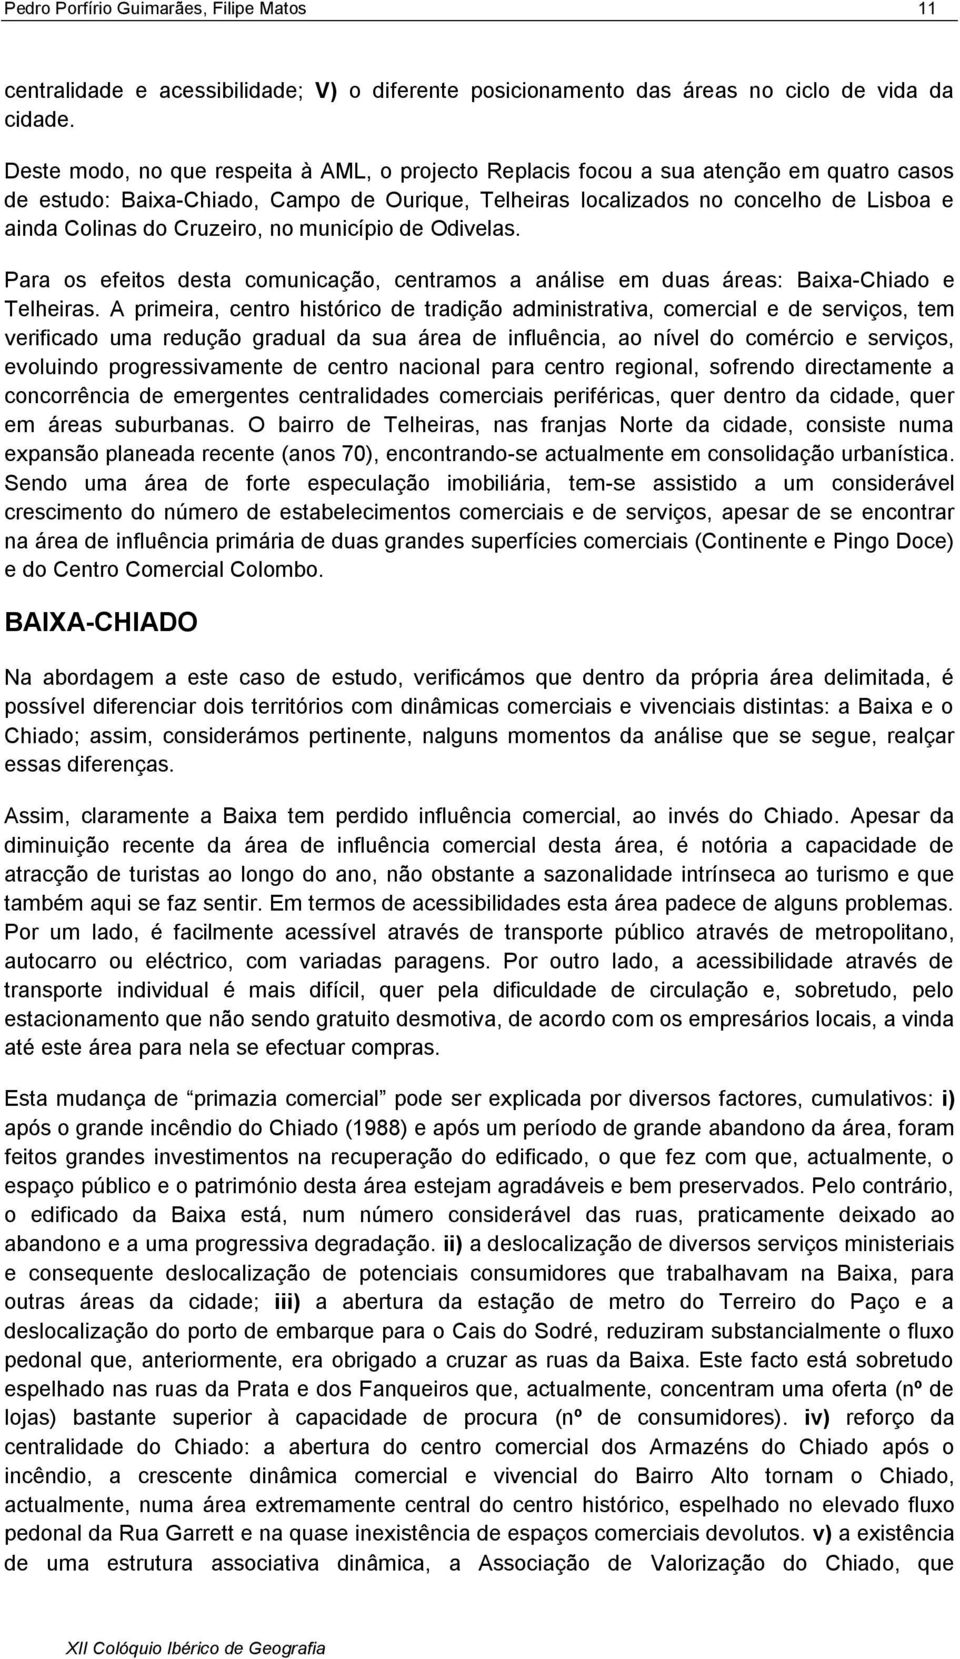 Cruzeiro, no município de Odivelas. Para os efeitos desta comunicação, centramos a análise em duas áreas: Baixa-Chiado e Telheiras.